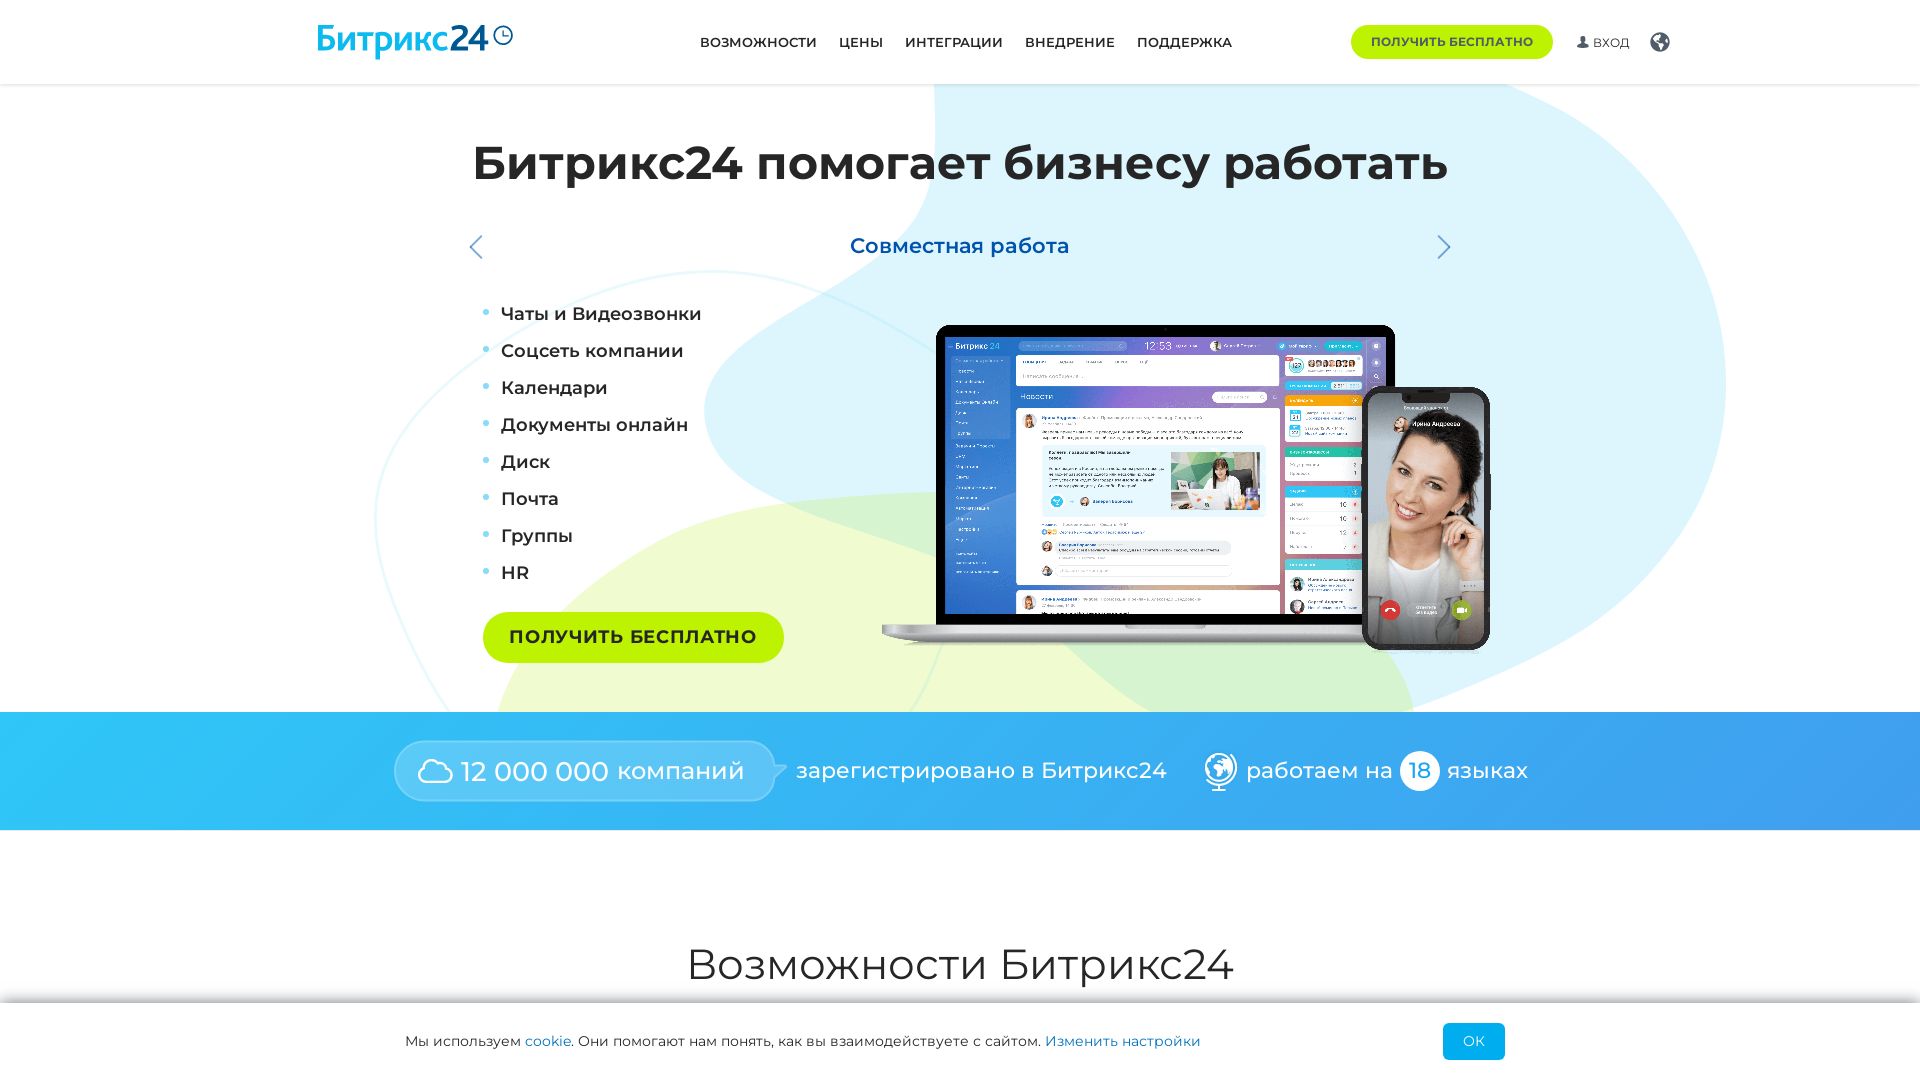 网站状态 bitrix24.ru 是  在线的